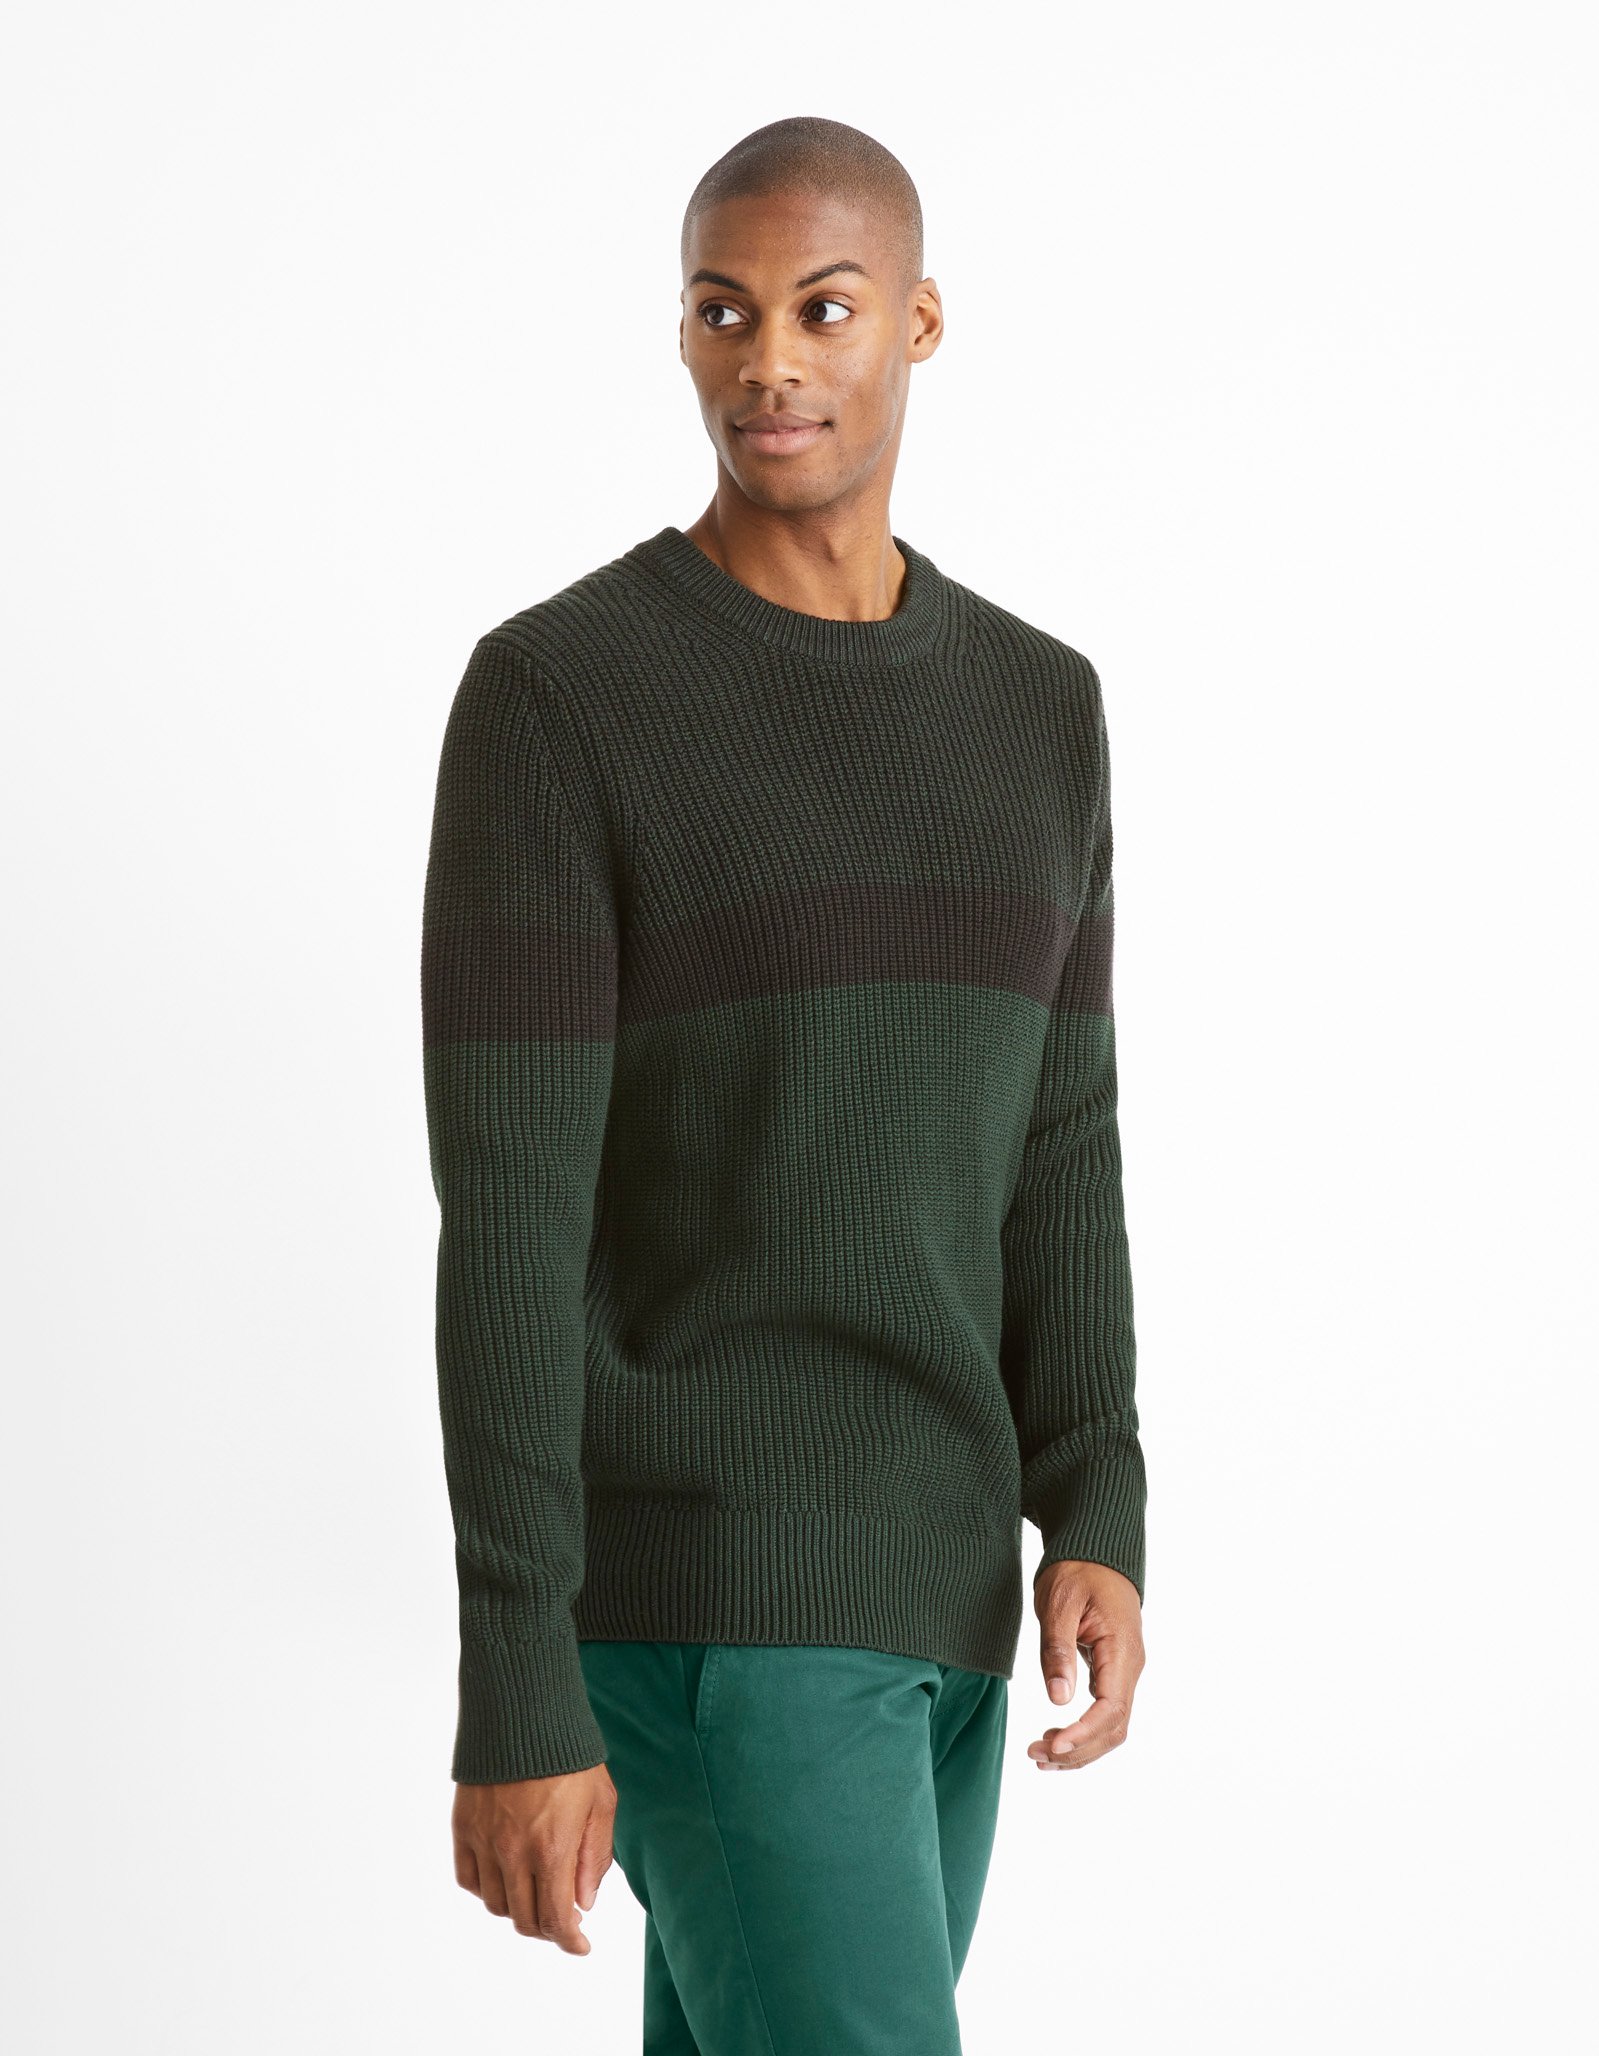 Celio Sweater with Stripe Ceriblock - Men